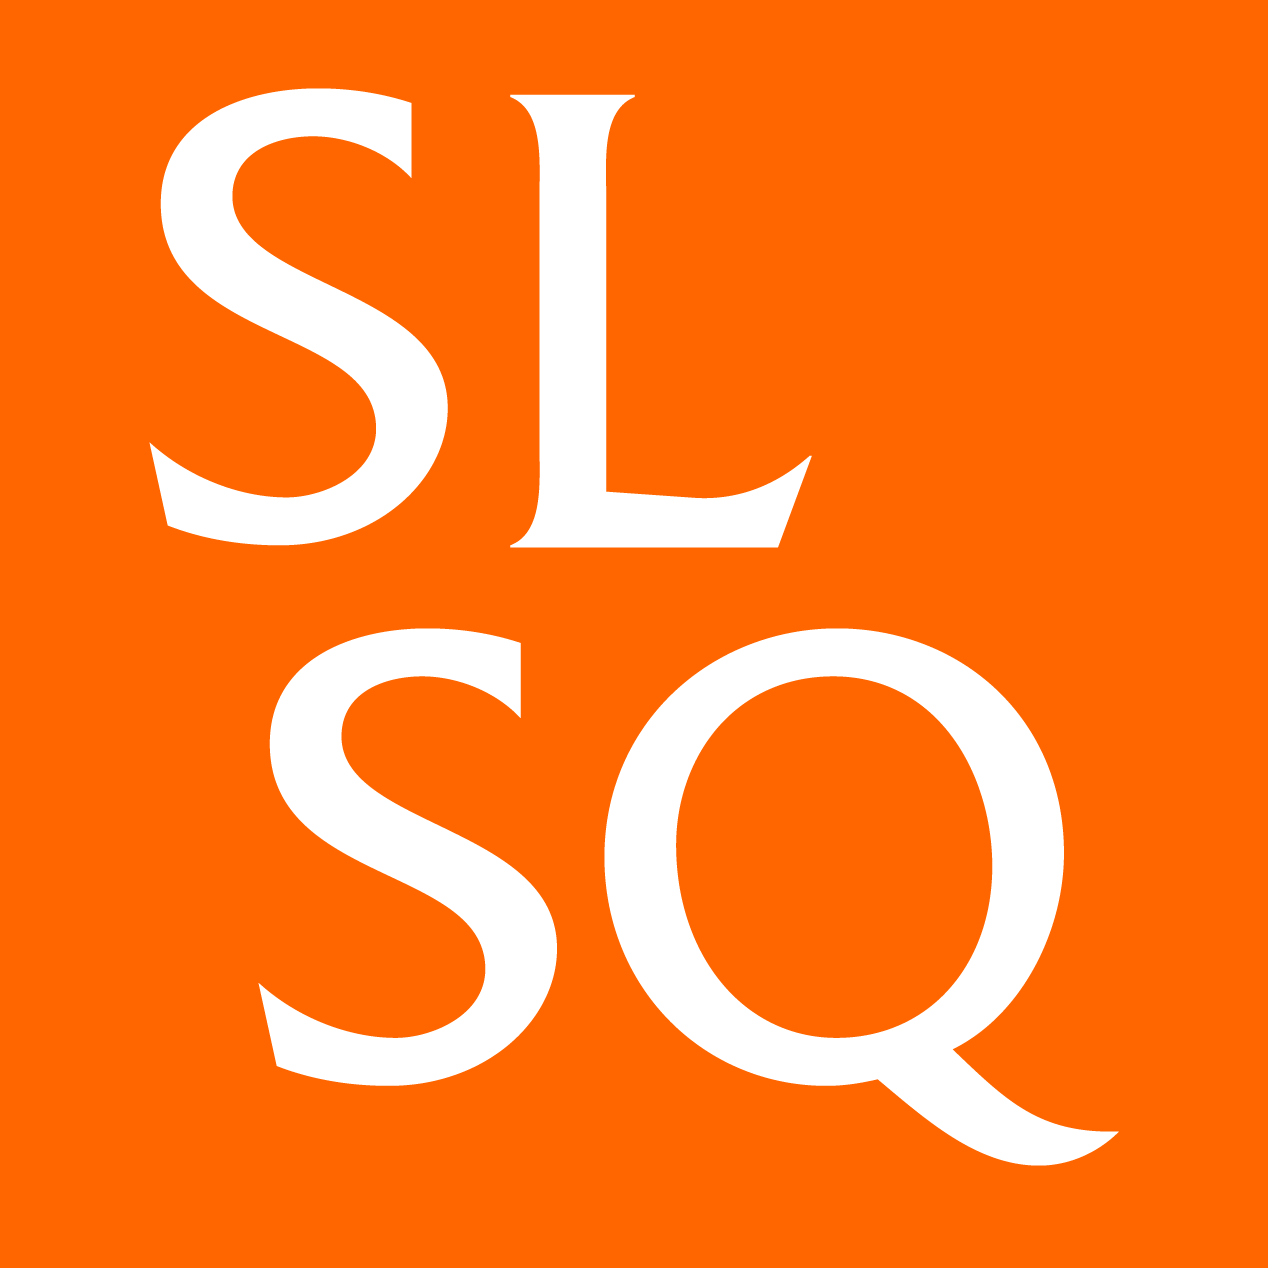 (c) Slsq.com